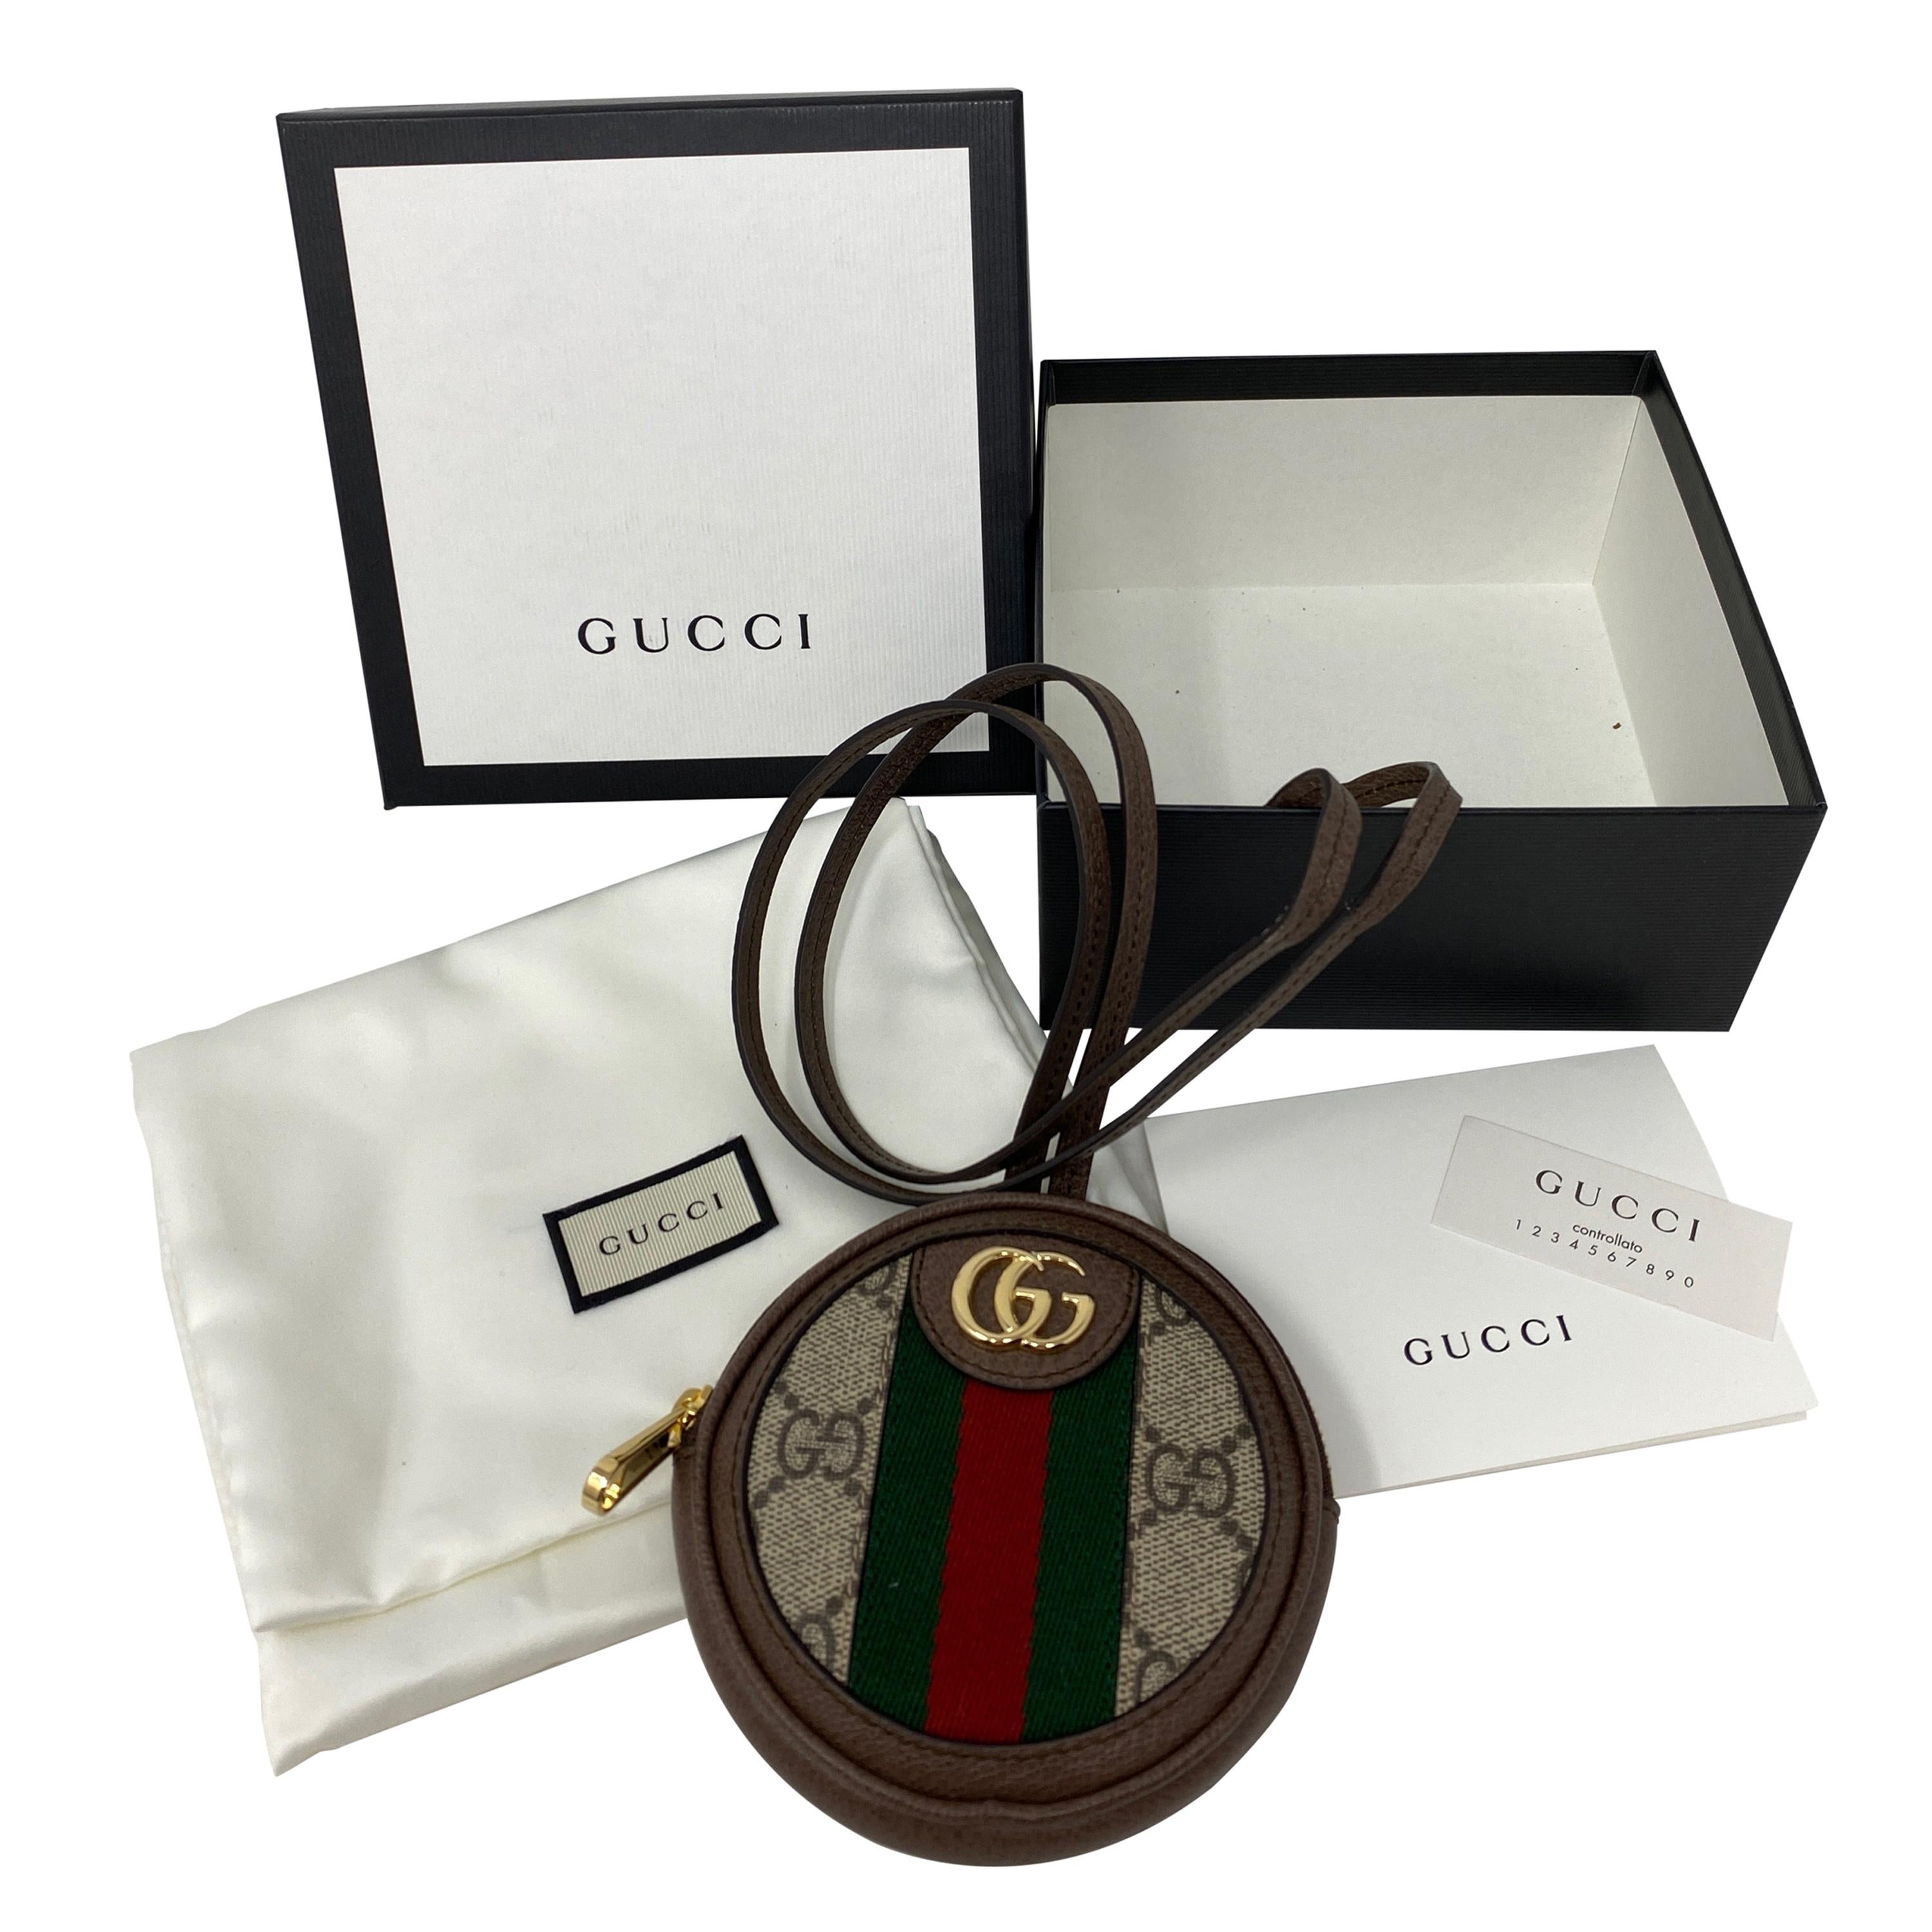 Gucci Mini Coin Purse Crossbody Bag